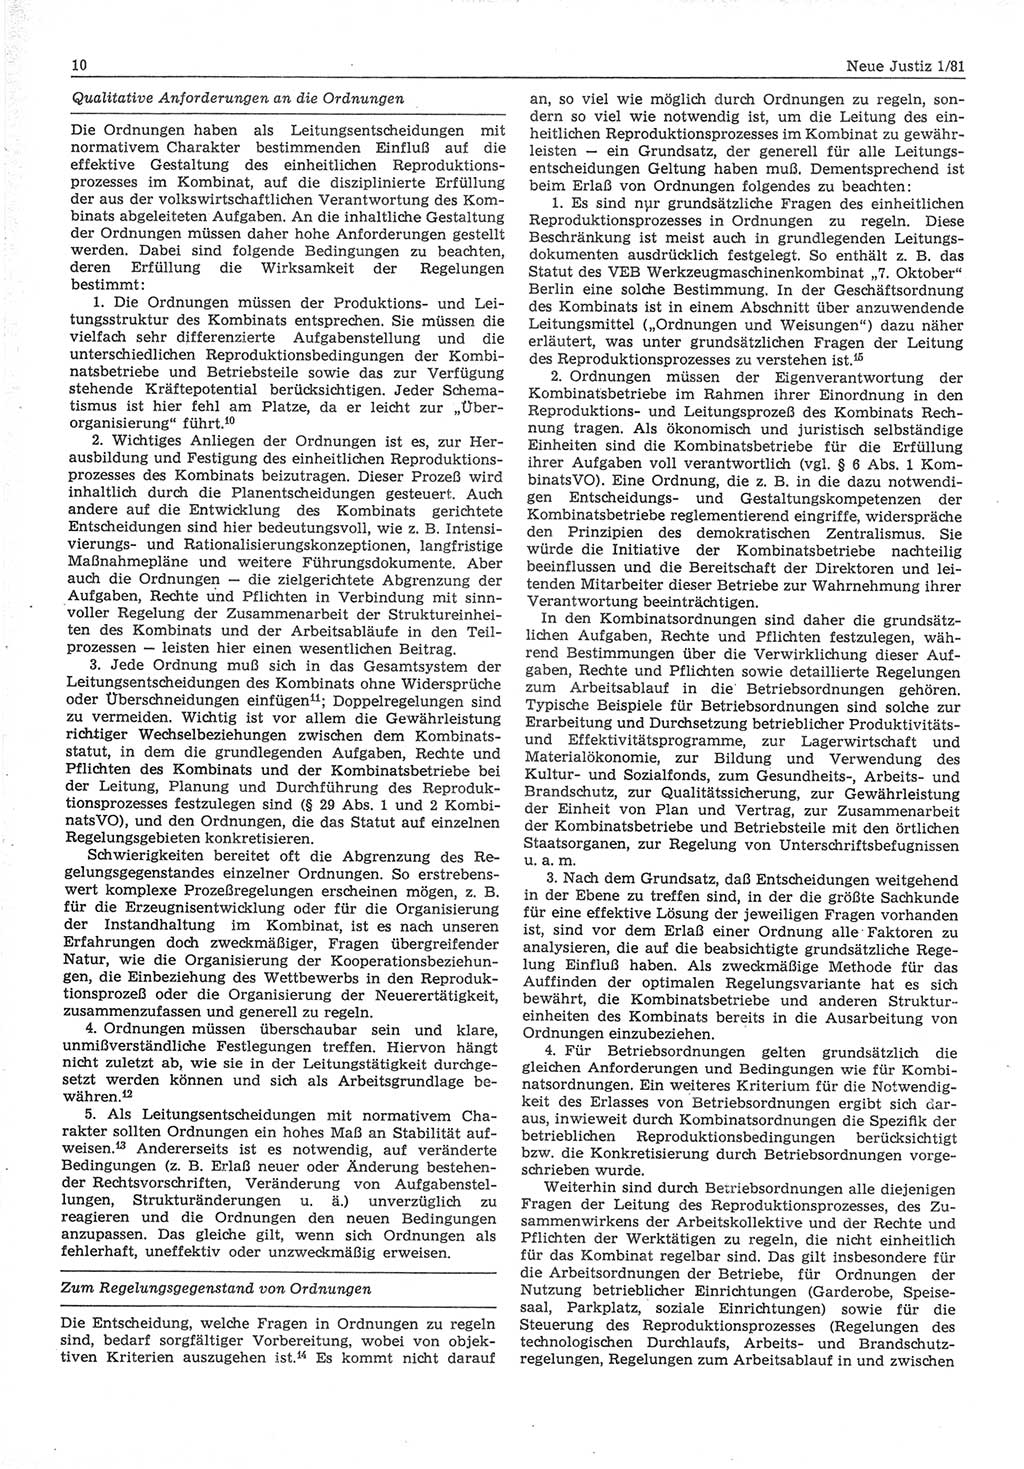 Neue Justiz (NJ), Zeitschrift für sozialistisches Recht und Gesetzlichkeit [Deutsche Demokratische Republik (DDR)], 35. Jahrgang 1981, Seite 10 (NJ DDR 1981, S. 10)